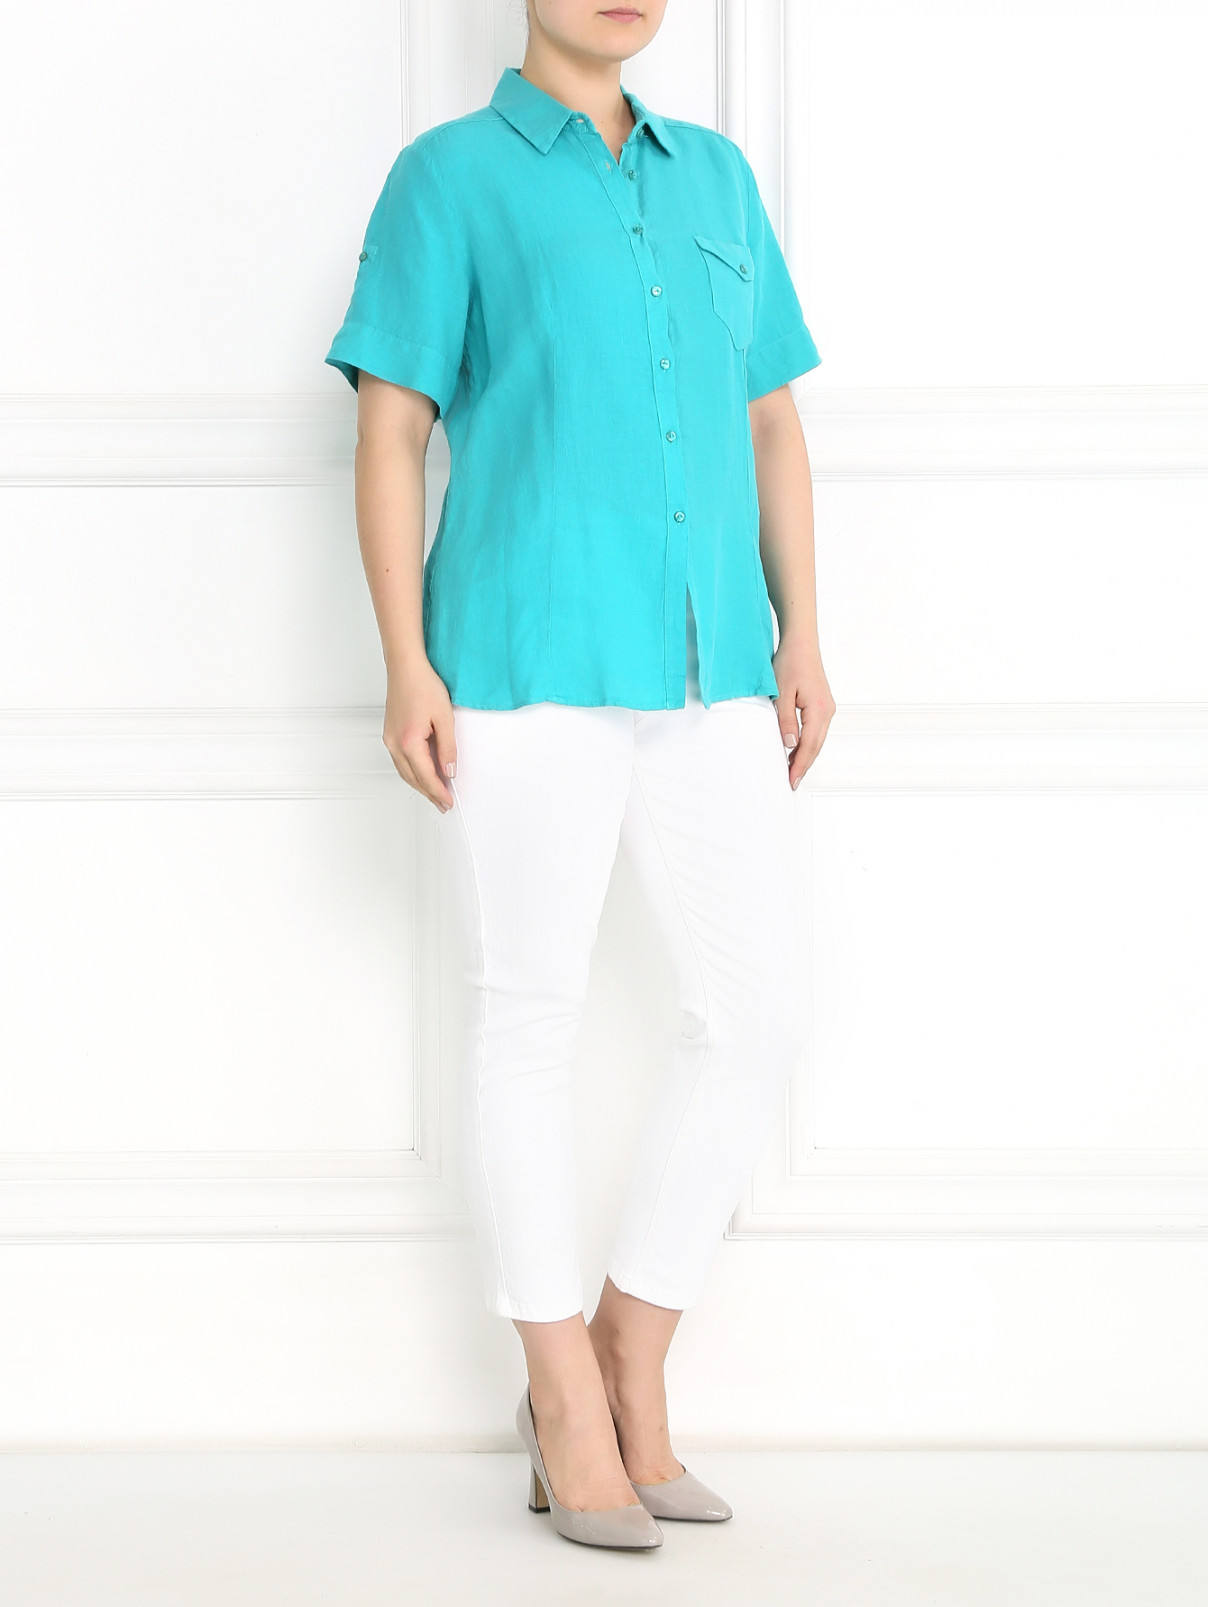 Блуза из льна с коротким рукавом Marina Sport  –  Модель Общий вид  – Цвет:  Зеленый